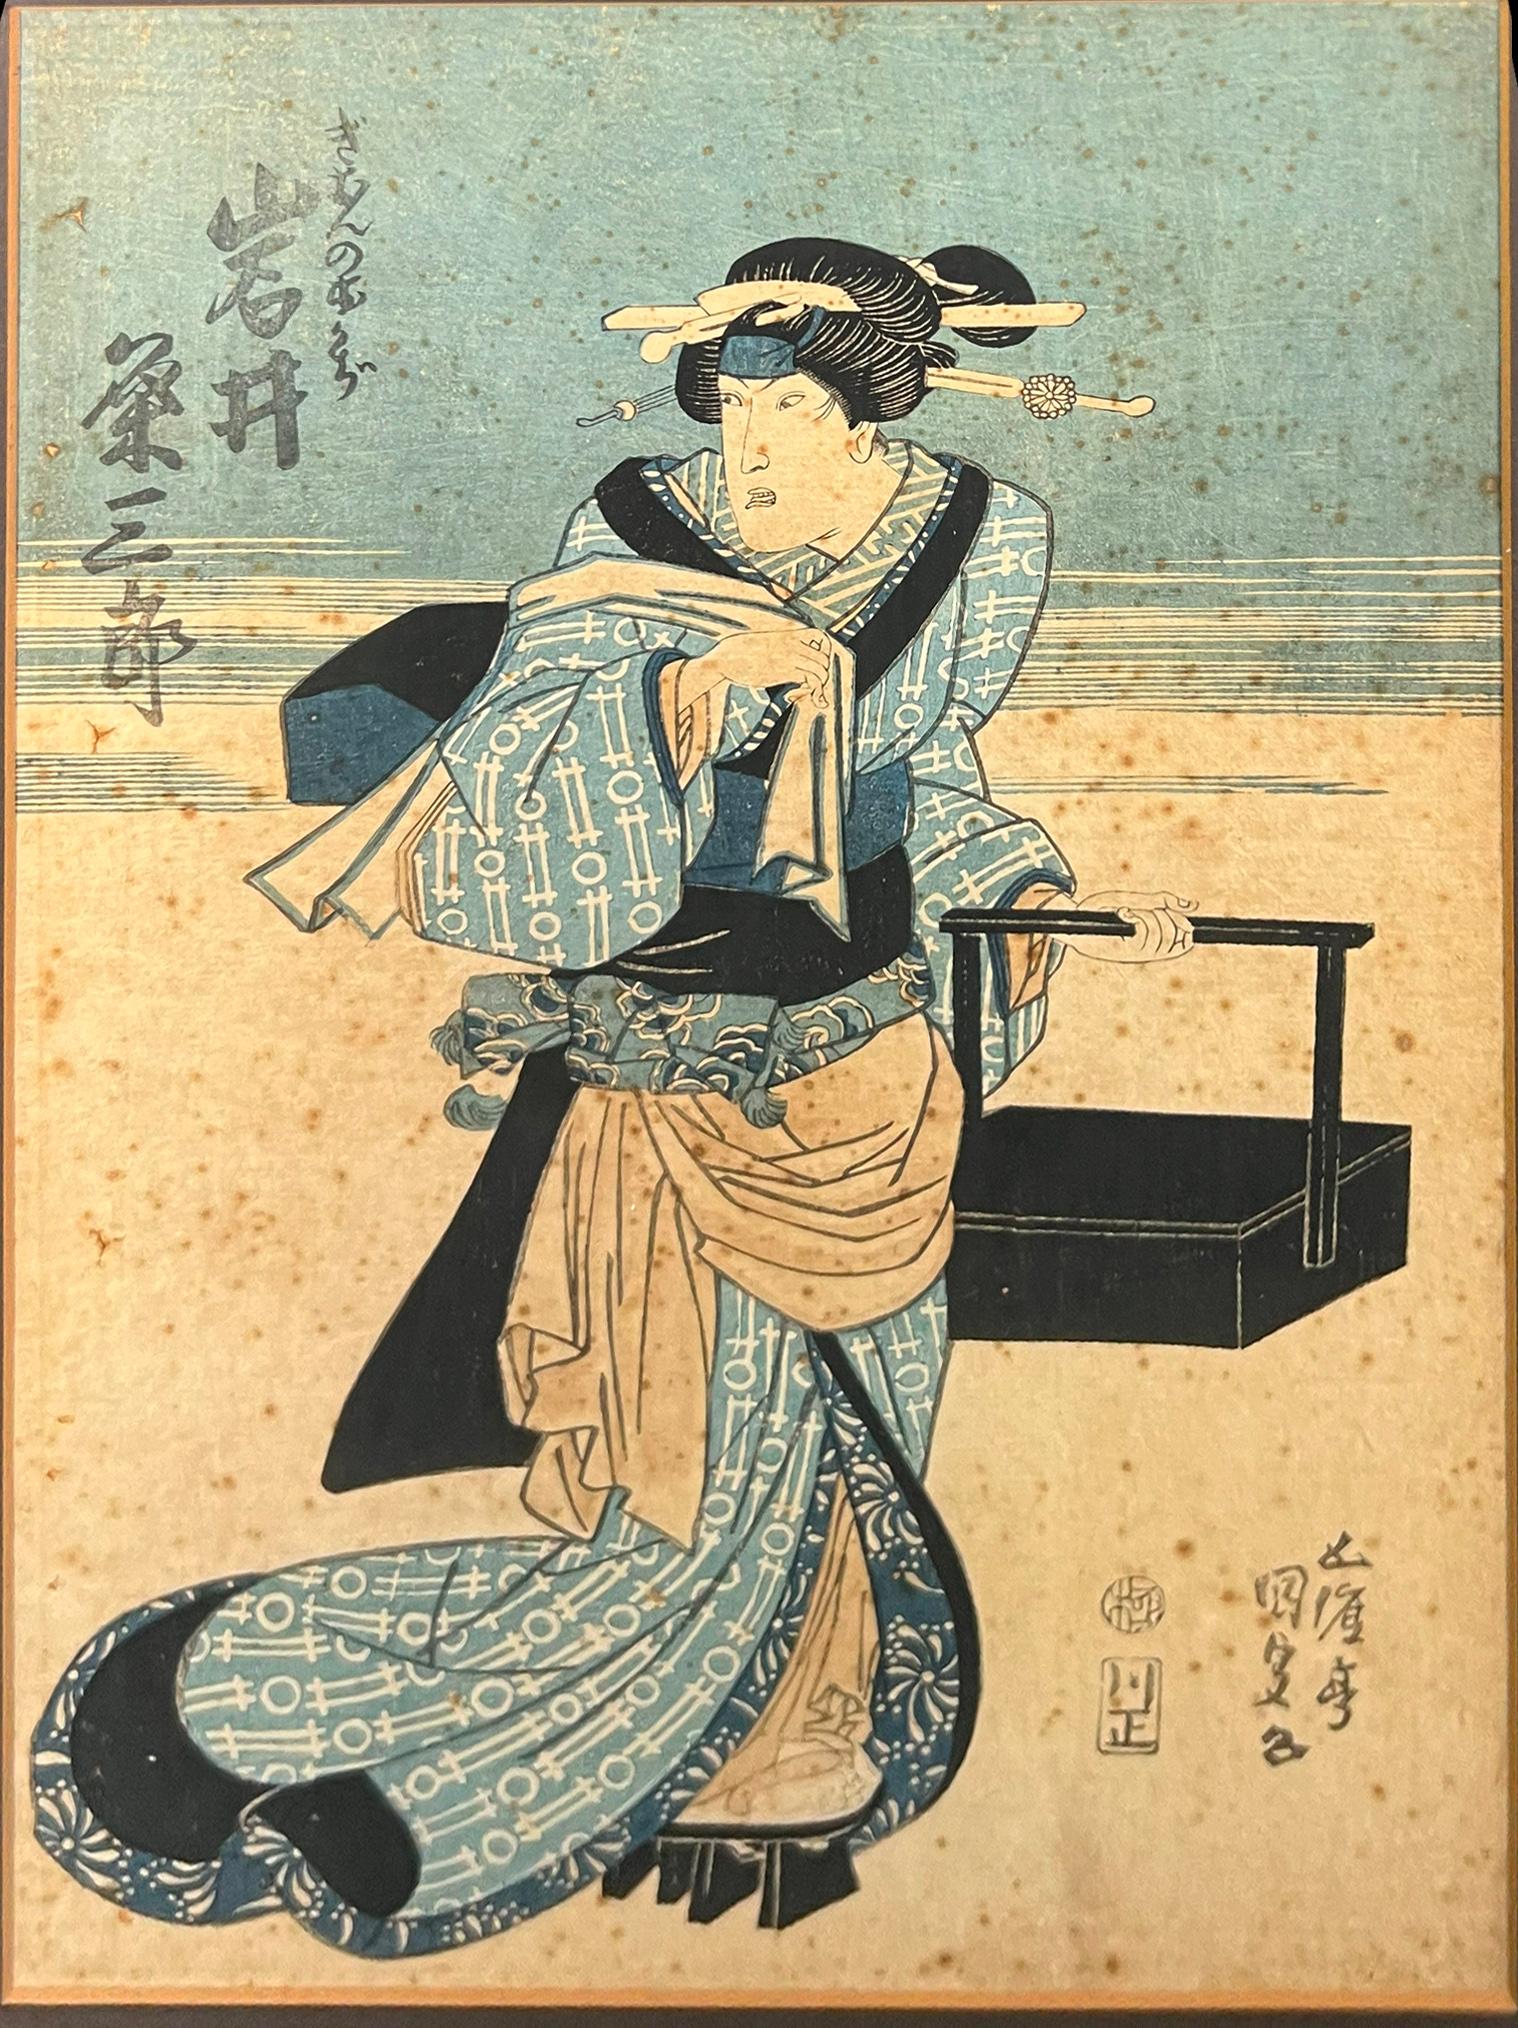 Ichimura Uzaemon XIII - actor as Okaji of Gion, 1862 